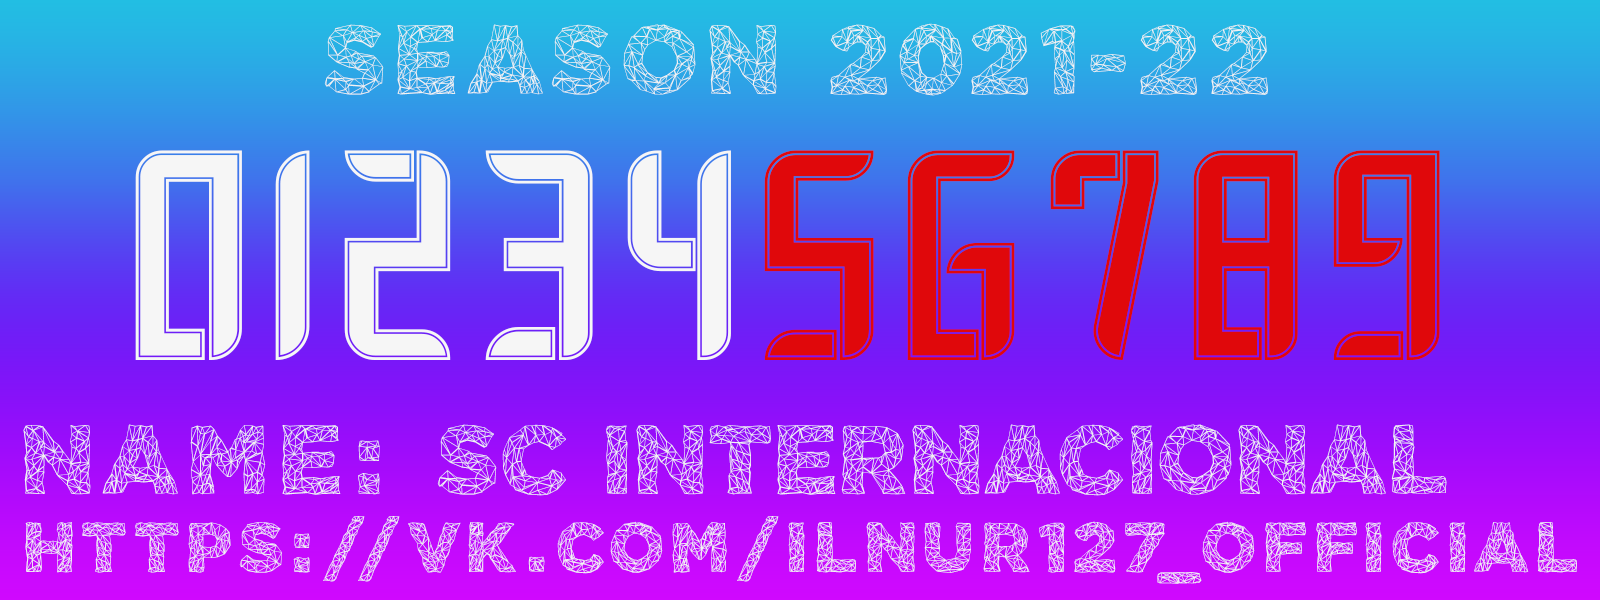 SC Internacional 2021-22 (kitnumbers).png